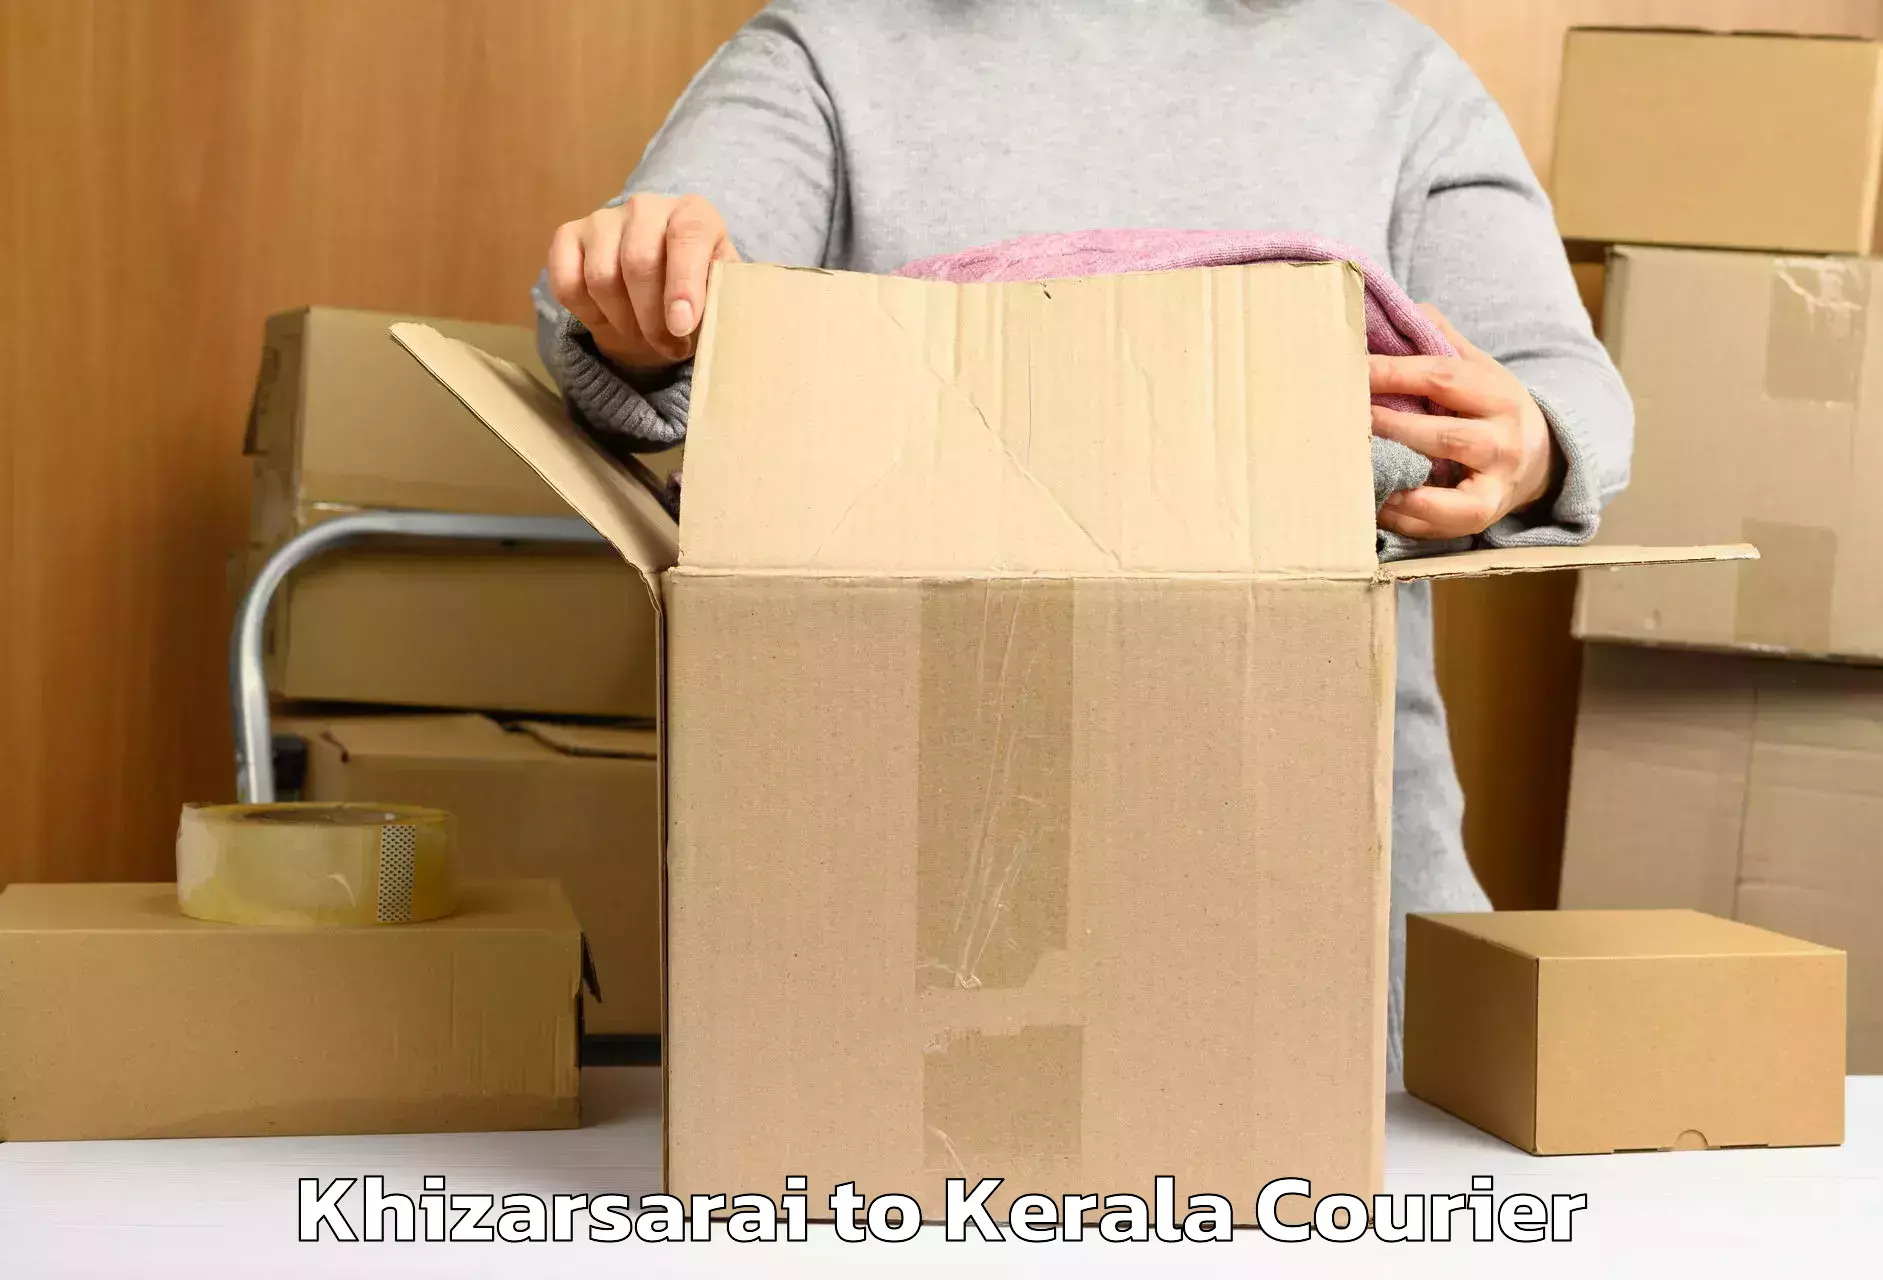 Luggage shipment tracking Khizarsarai to Nedumkandam